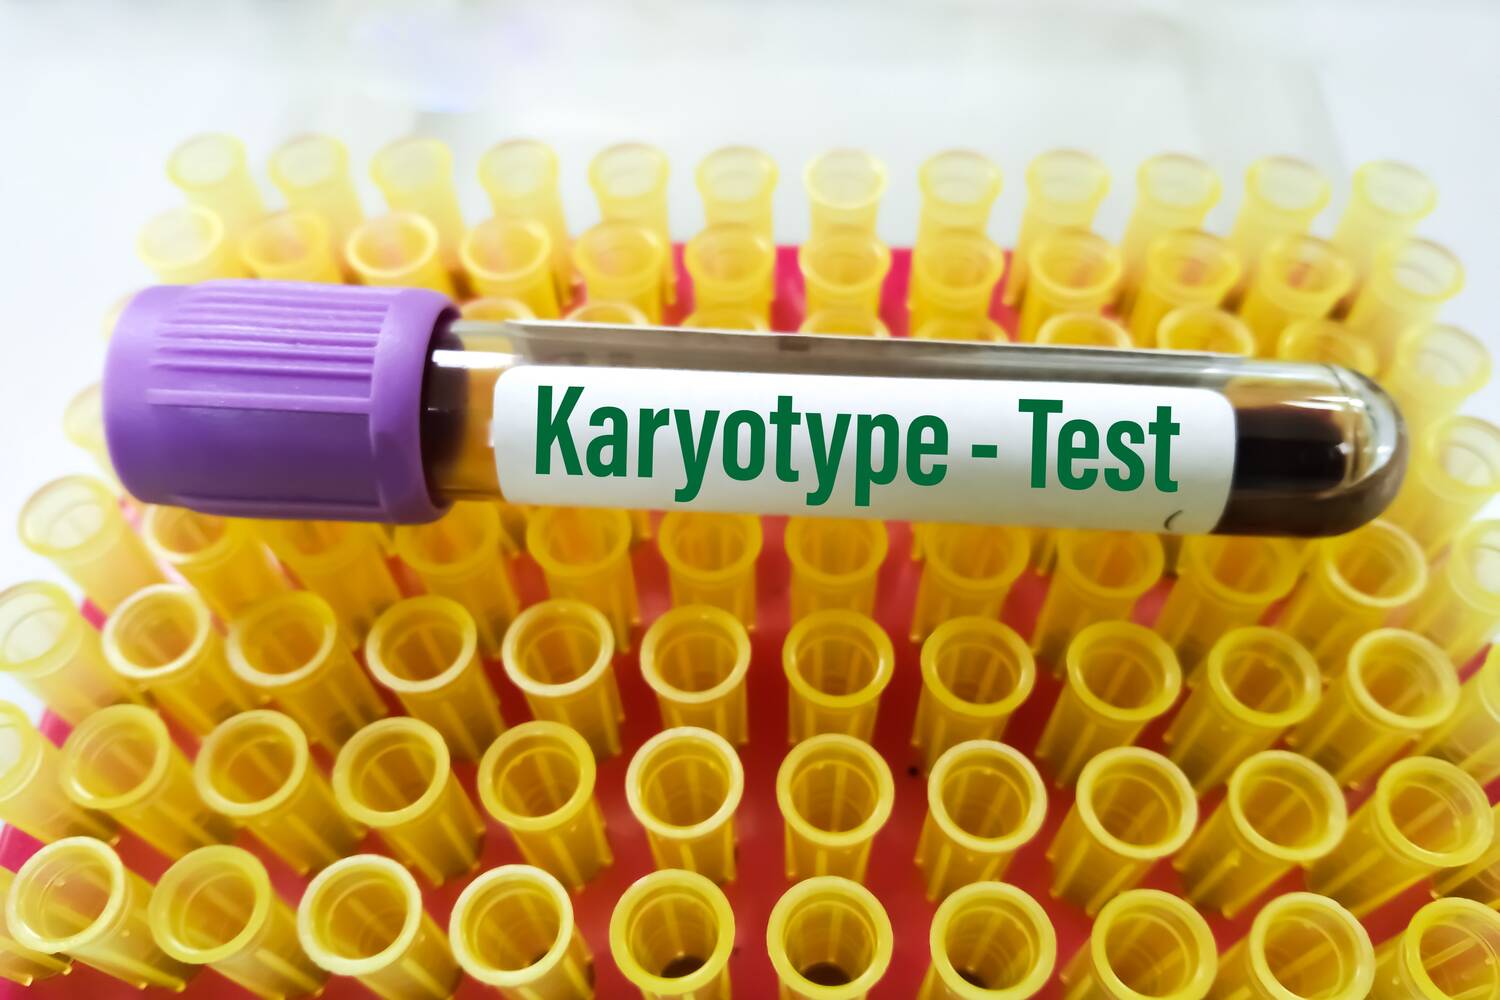 Karyotype testing